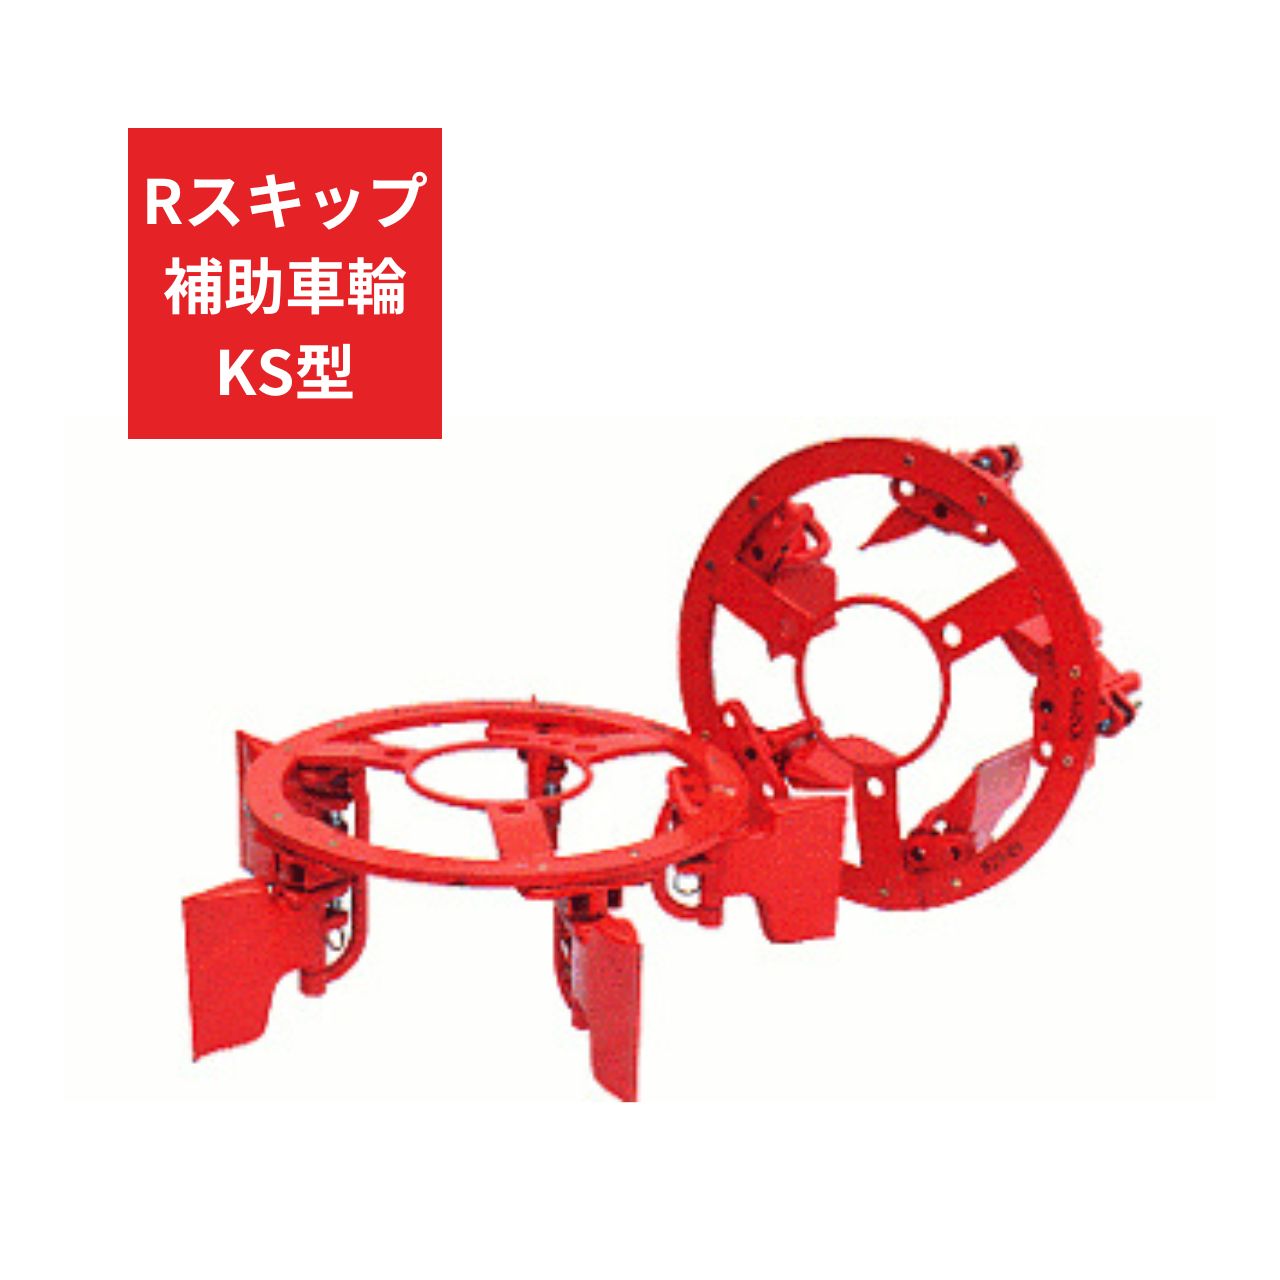 トラクター用 補助車輪 KS車輪 Rスキップ補助車輪KS ジョーニシ RKS250 9.5-24 通販